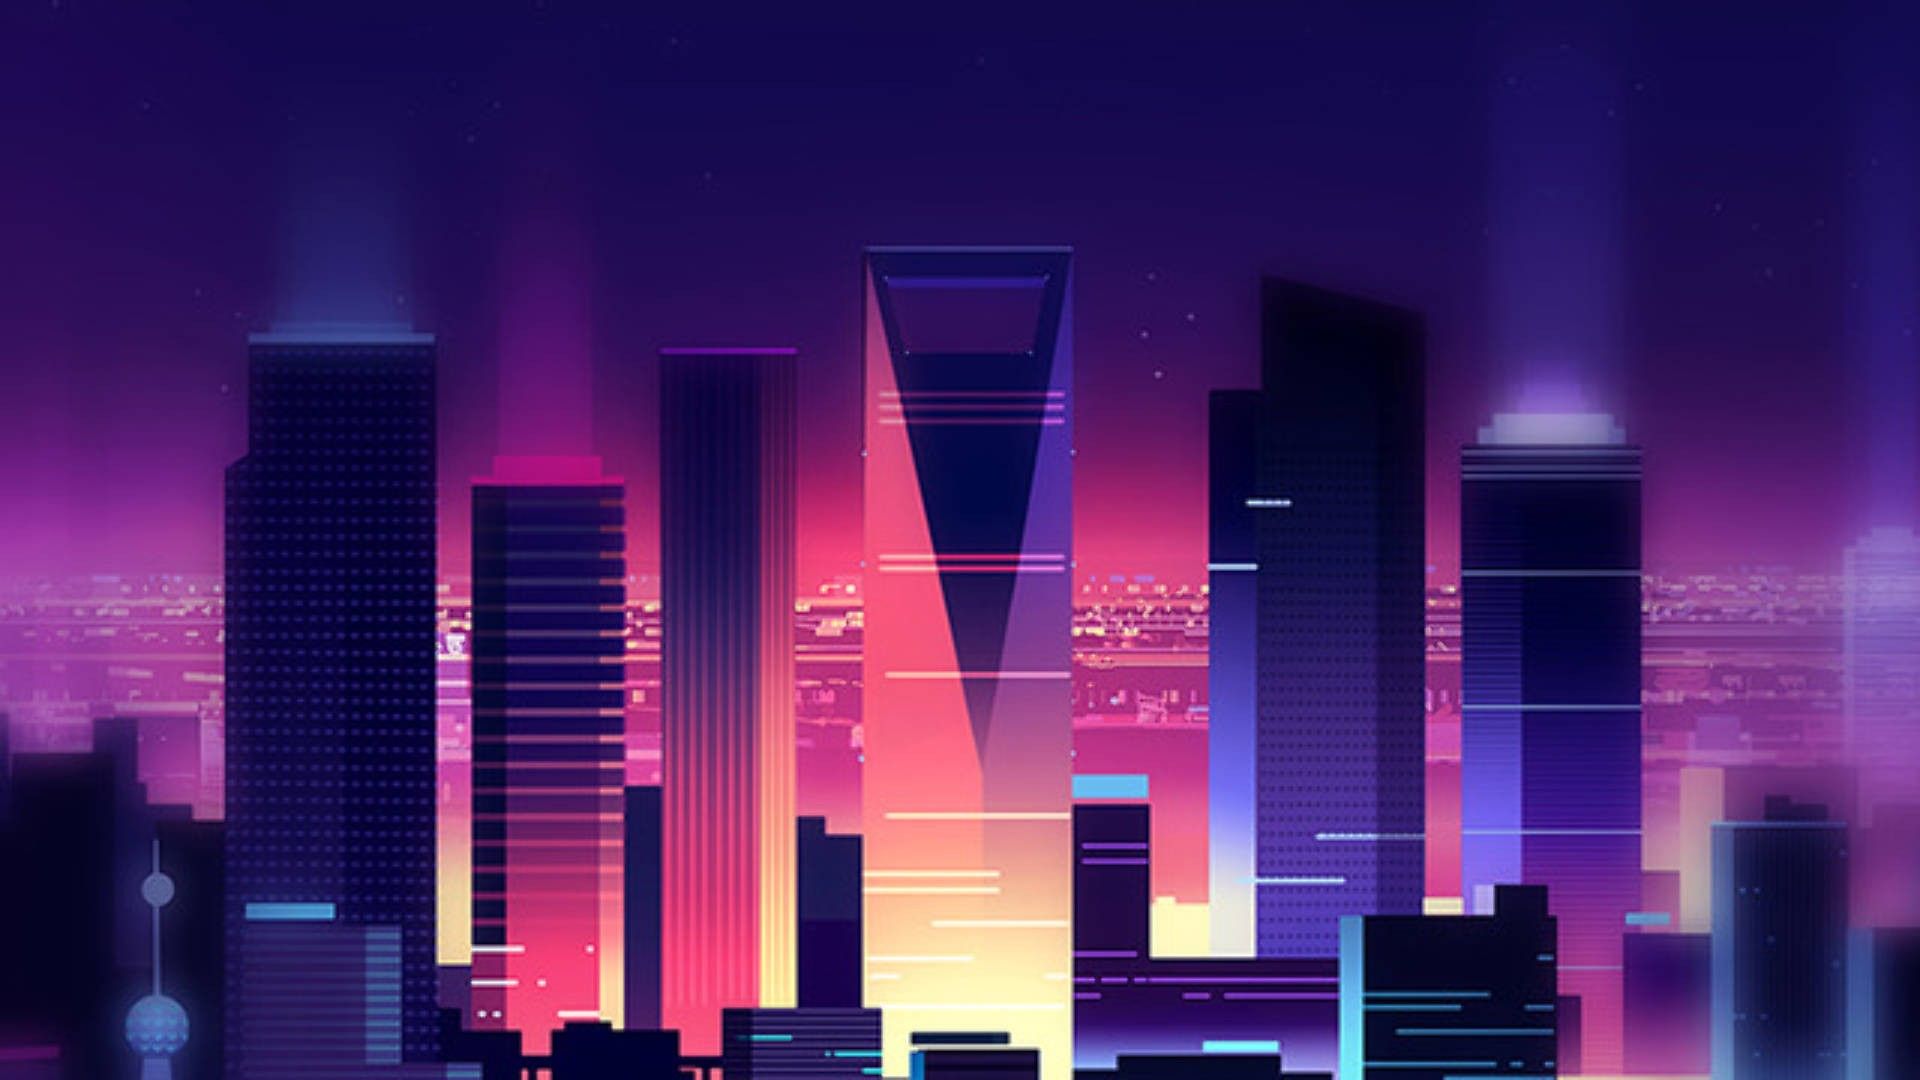  Gaming 1920x1080 Hintergrundbild 1920x1080. Neon Purple Aesthetic Wallpaper for Desktop